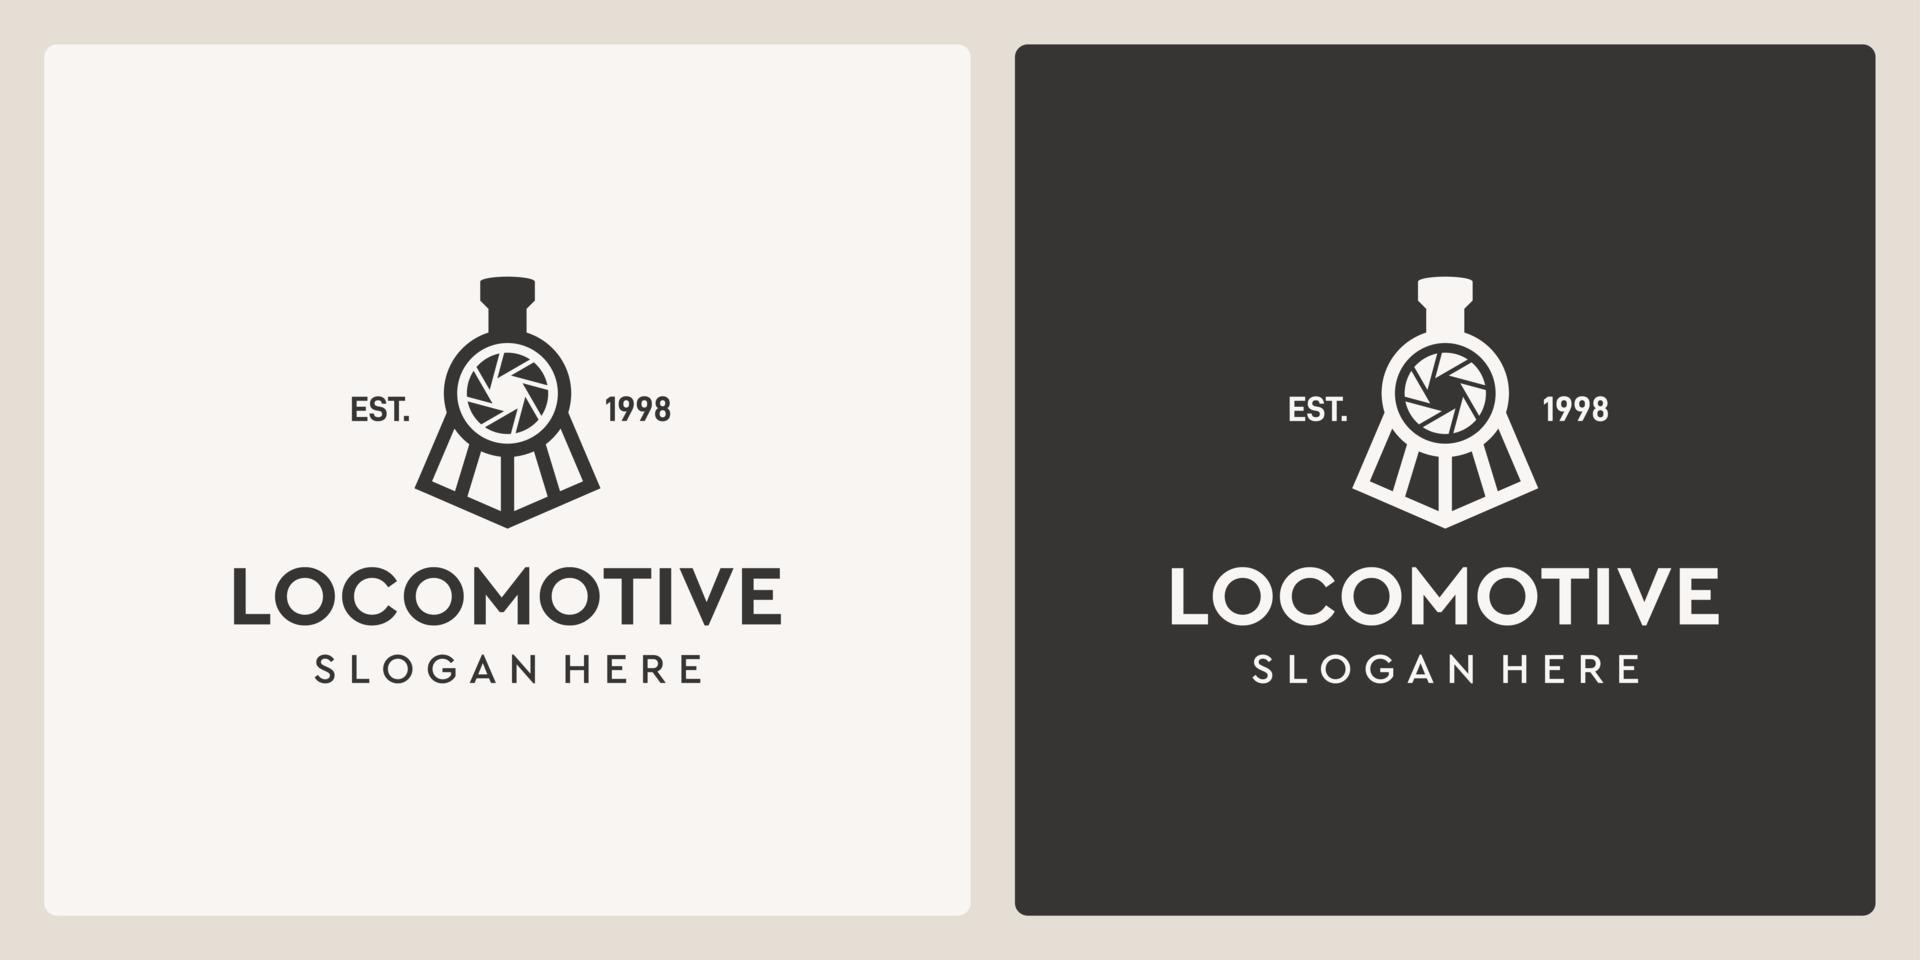 plantilla de diseño de logotipo de fotografía y tren de locomotora antiguo vintage simple. vector